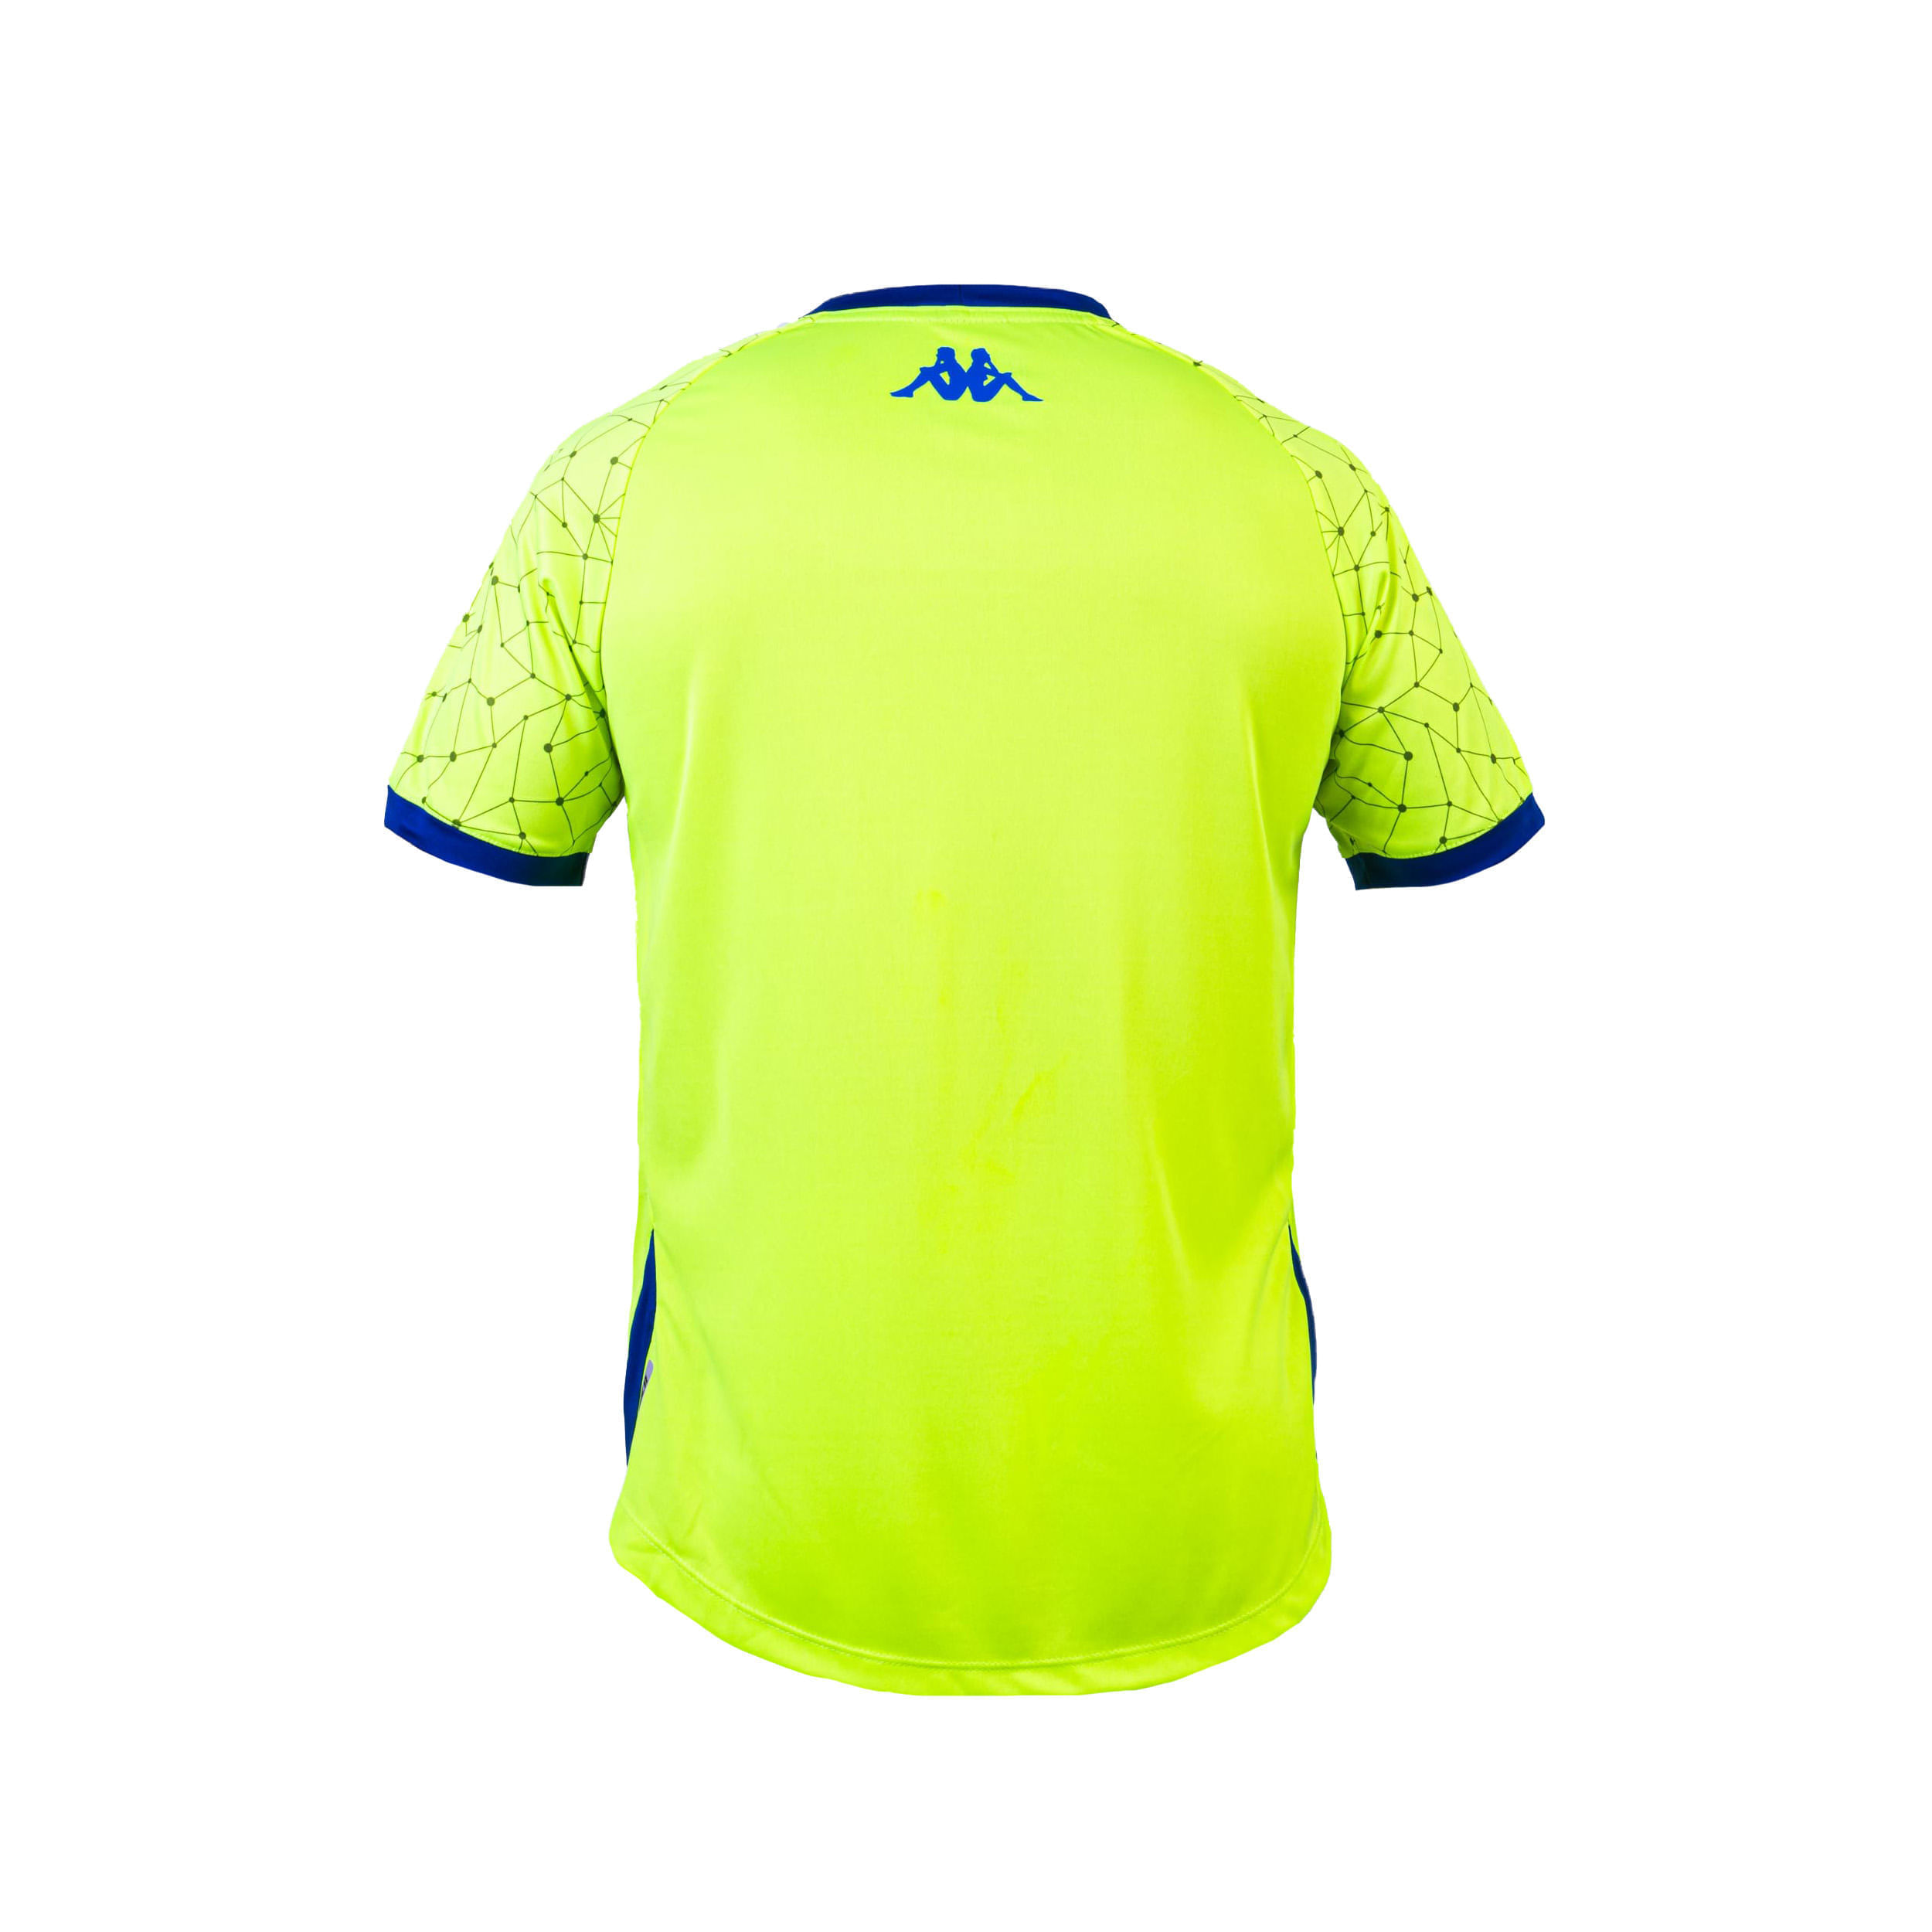 Compra Abou Pro 6 Camiseta Azul Hombre Deportivo Cali Kappa en